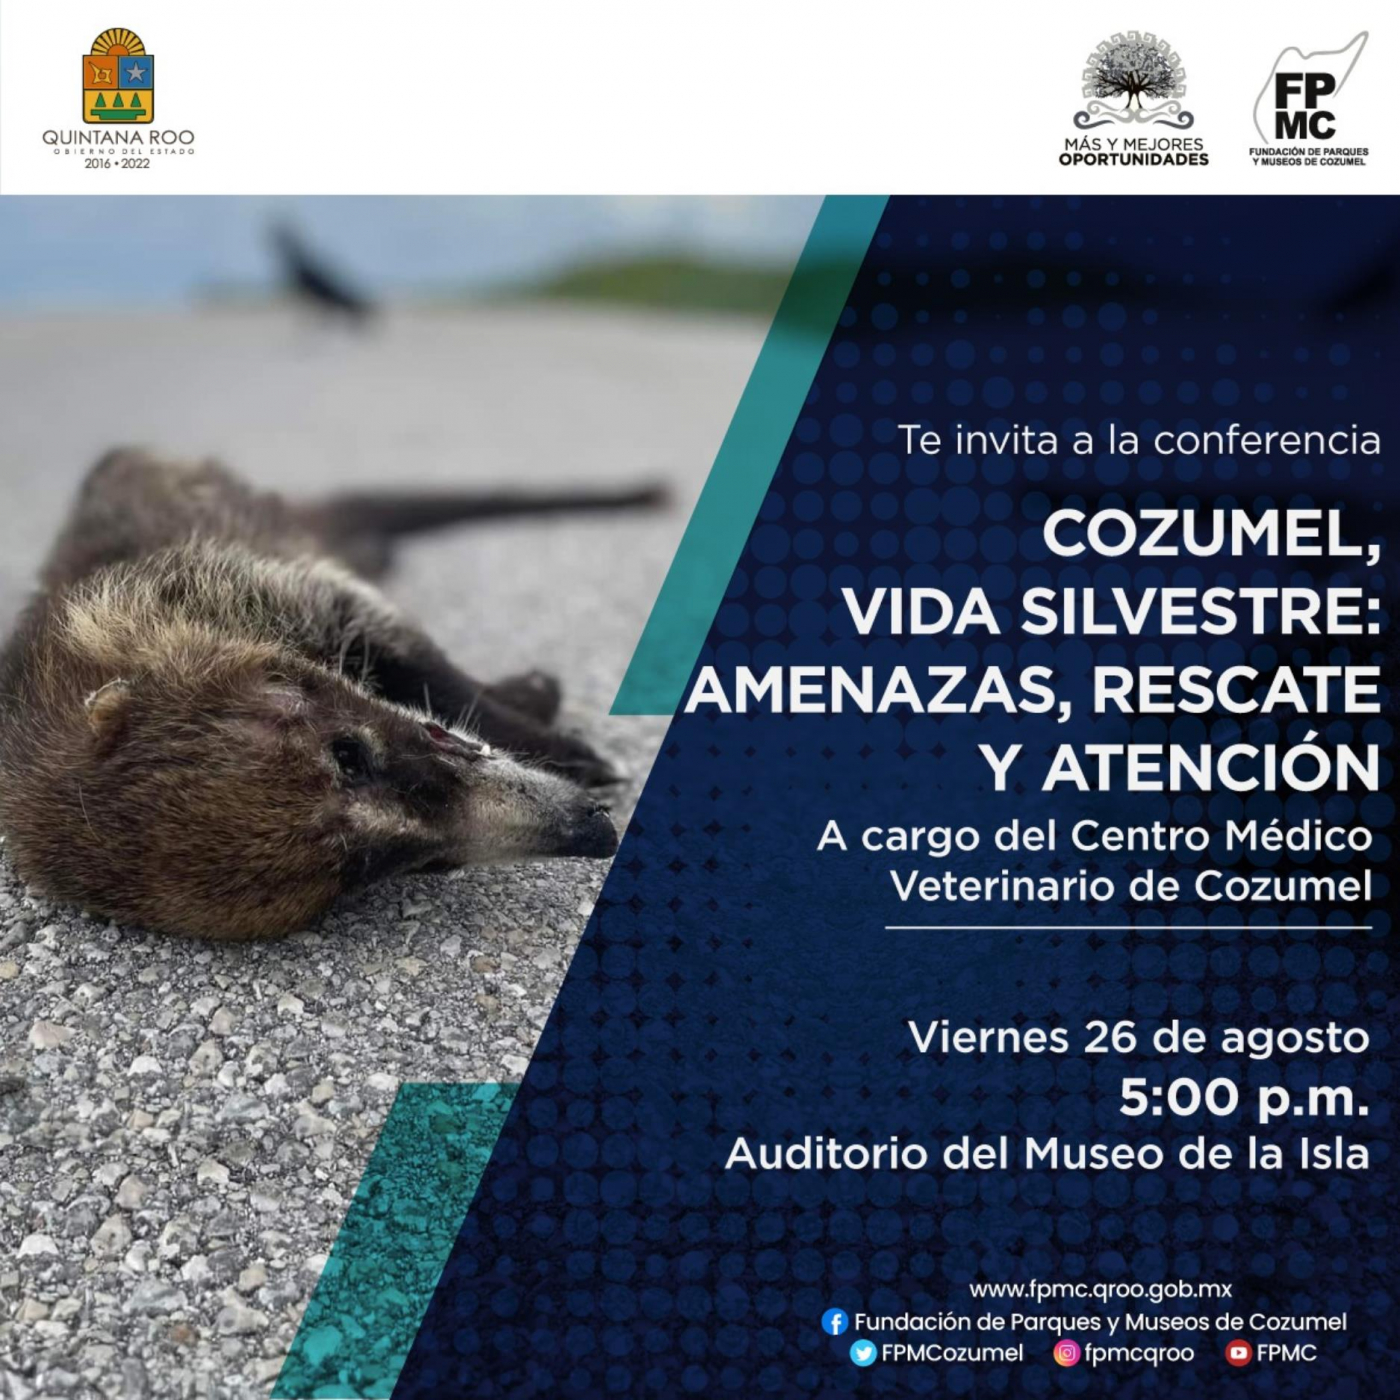 La FPMC invita a la conferencia “Cozumel, Vida Silvestre: Amenazas, Rescate y Atención”